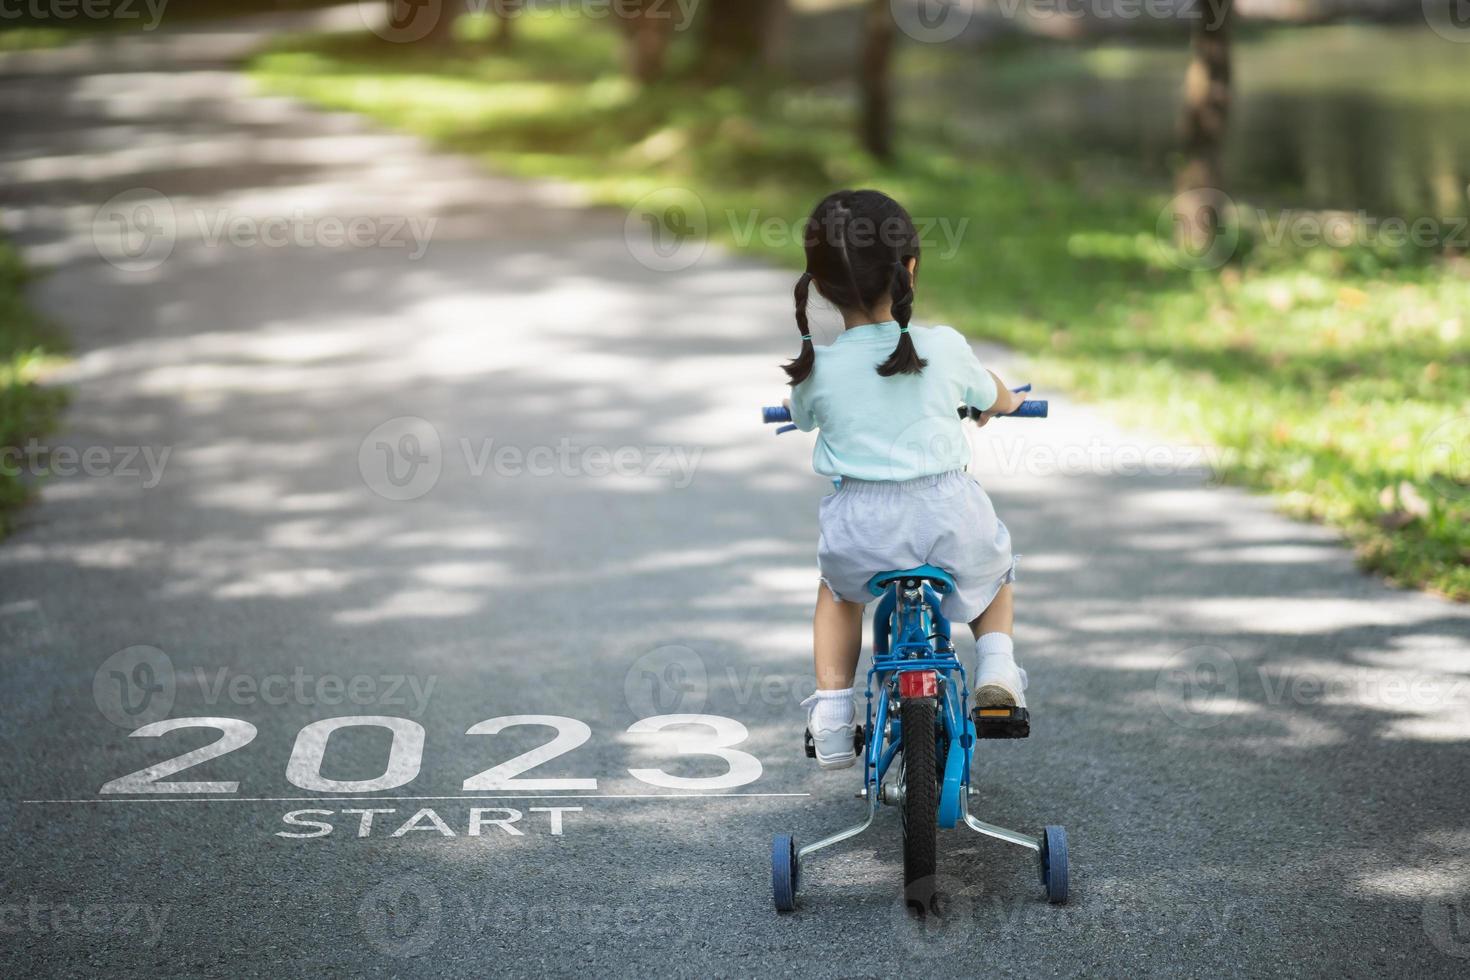 feliz ano novo 2023,2023 simboliza o início do ano novo. a carta começa o ano novo de 2023 na bicicleta de bicicleta da menina na estrada no jardim do parque natural. meta de sucesso. papel de parede do número 2023. foto